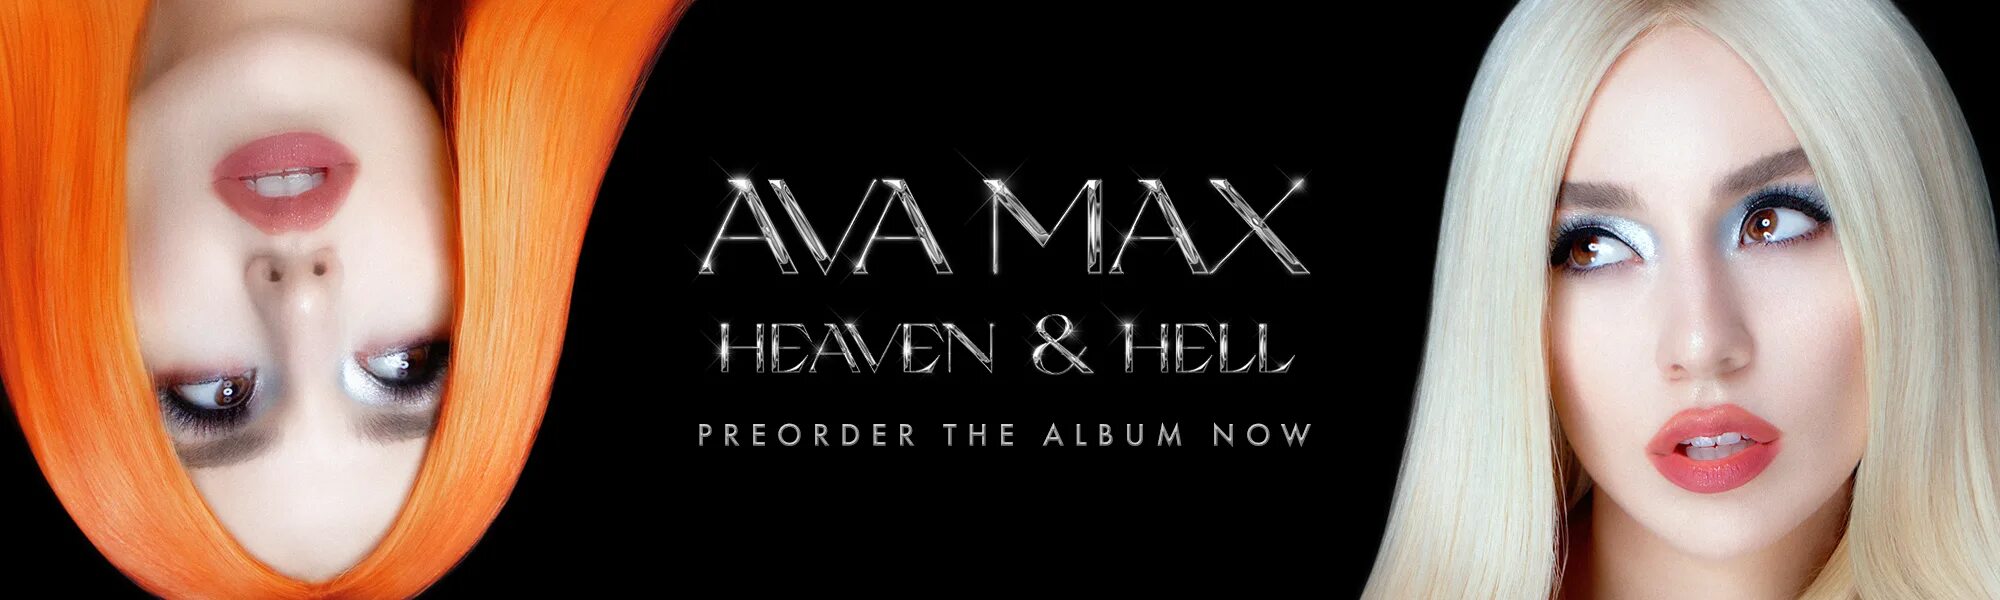 Ava Max Hell. Ava Max "Heaven & Hell". Ava Max - (2020) - Heaven & Hell. Ava Max Heaven Hell album.